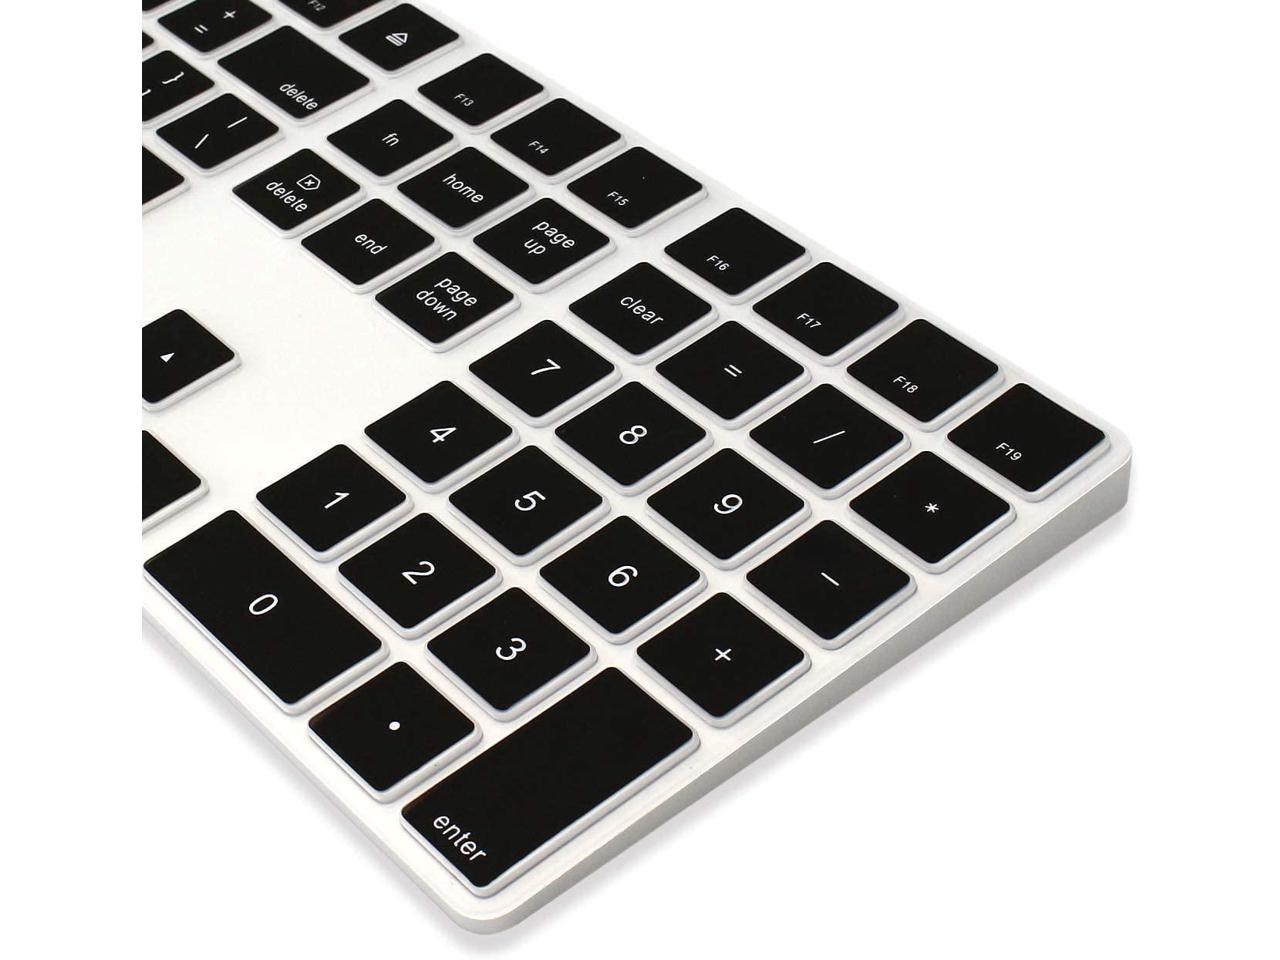 apple numeric keypad layout